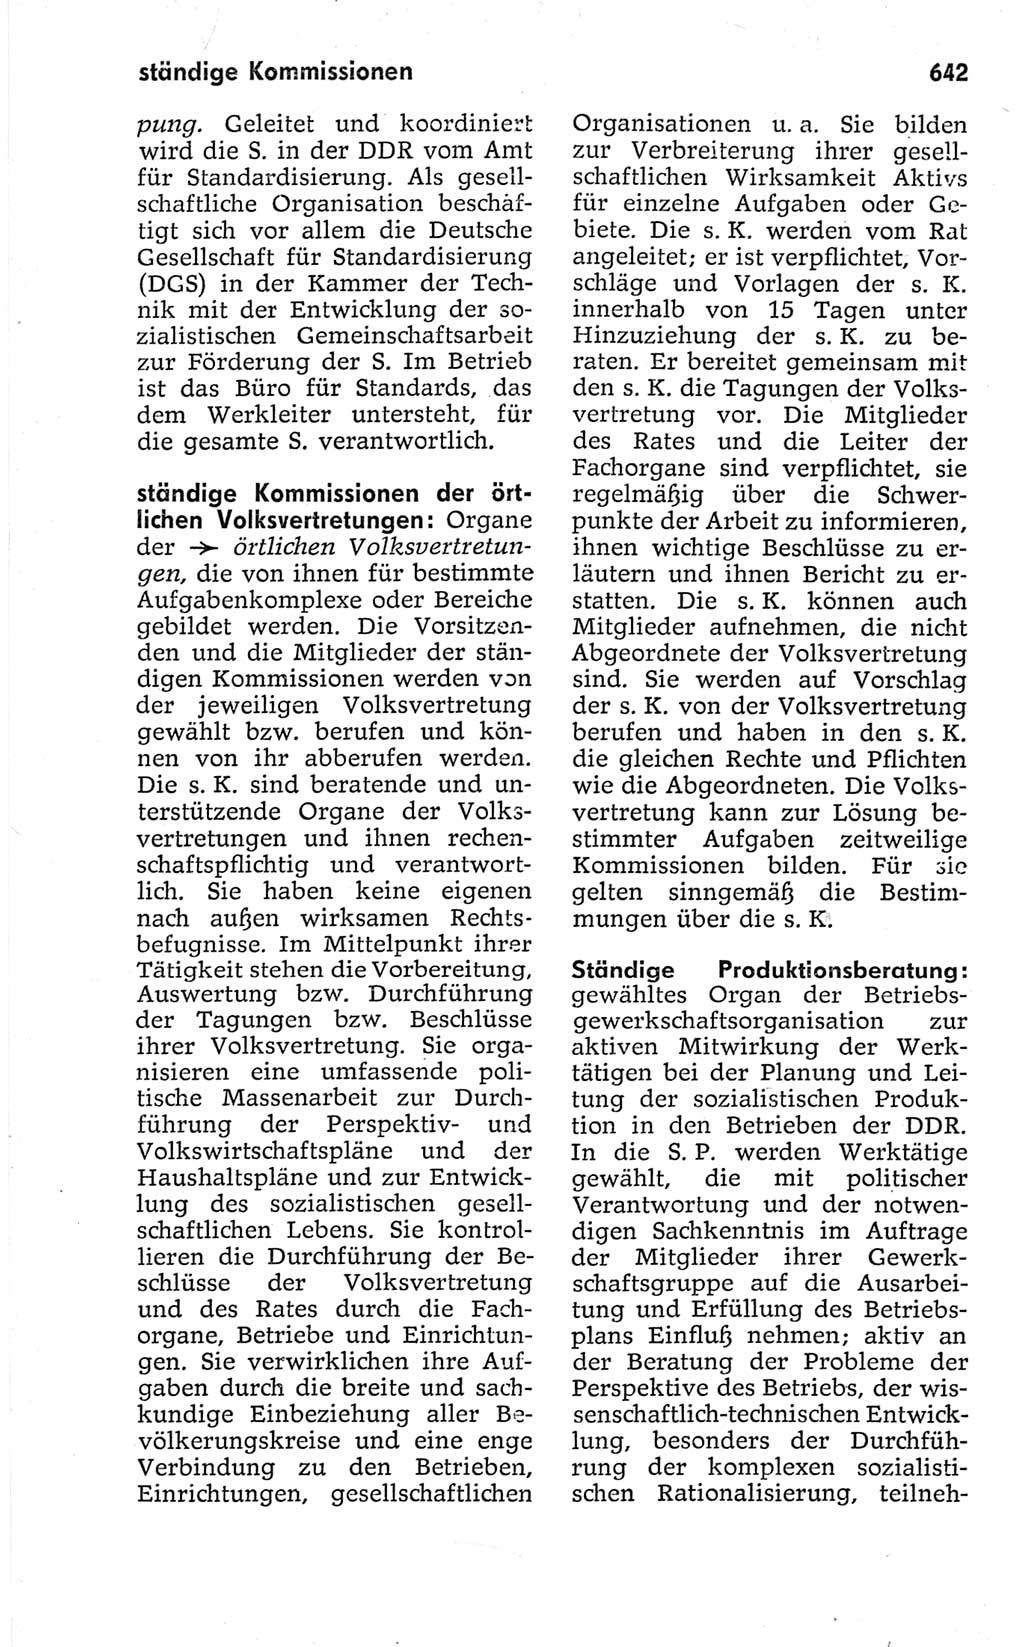 Kleines politisches Wörterbuch [Deutsche Demokratische Republik (DDR)] 1967, Seite 642 (Kl. pol. Wb. DDR 1967, S. 642)